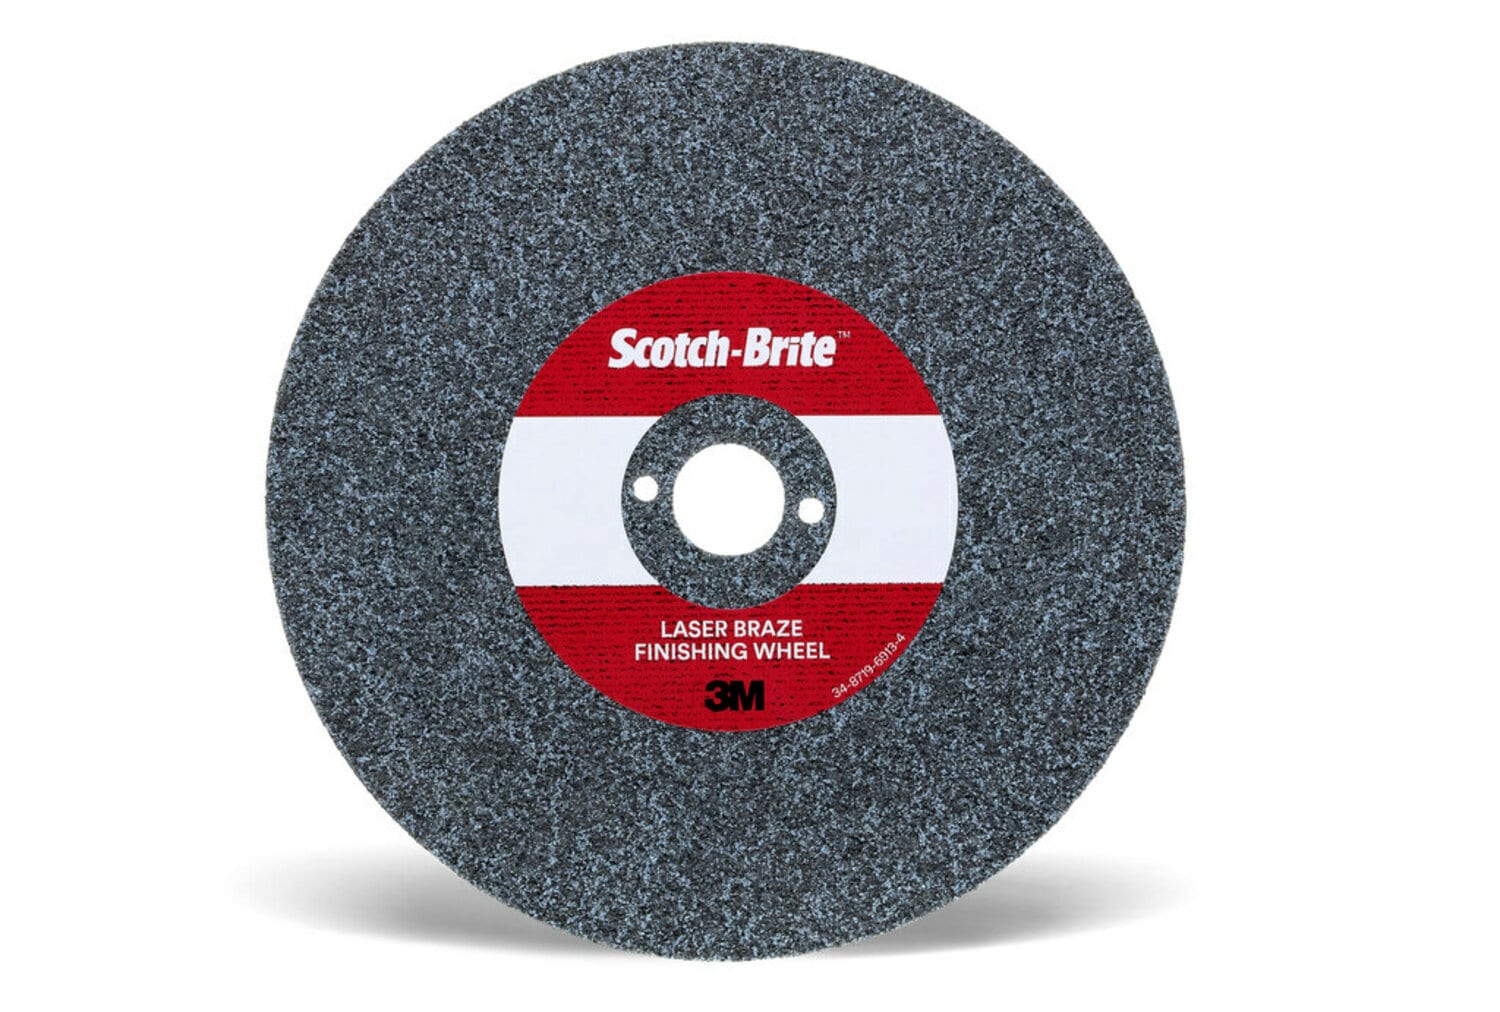 7100117425 - Scotch-Brite Laser Braze Finishing Wheel, LB-UW, 6 in x 3.5 mm x 1/2
in, 10 ea/Case